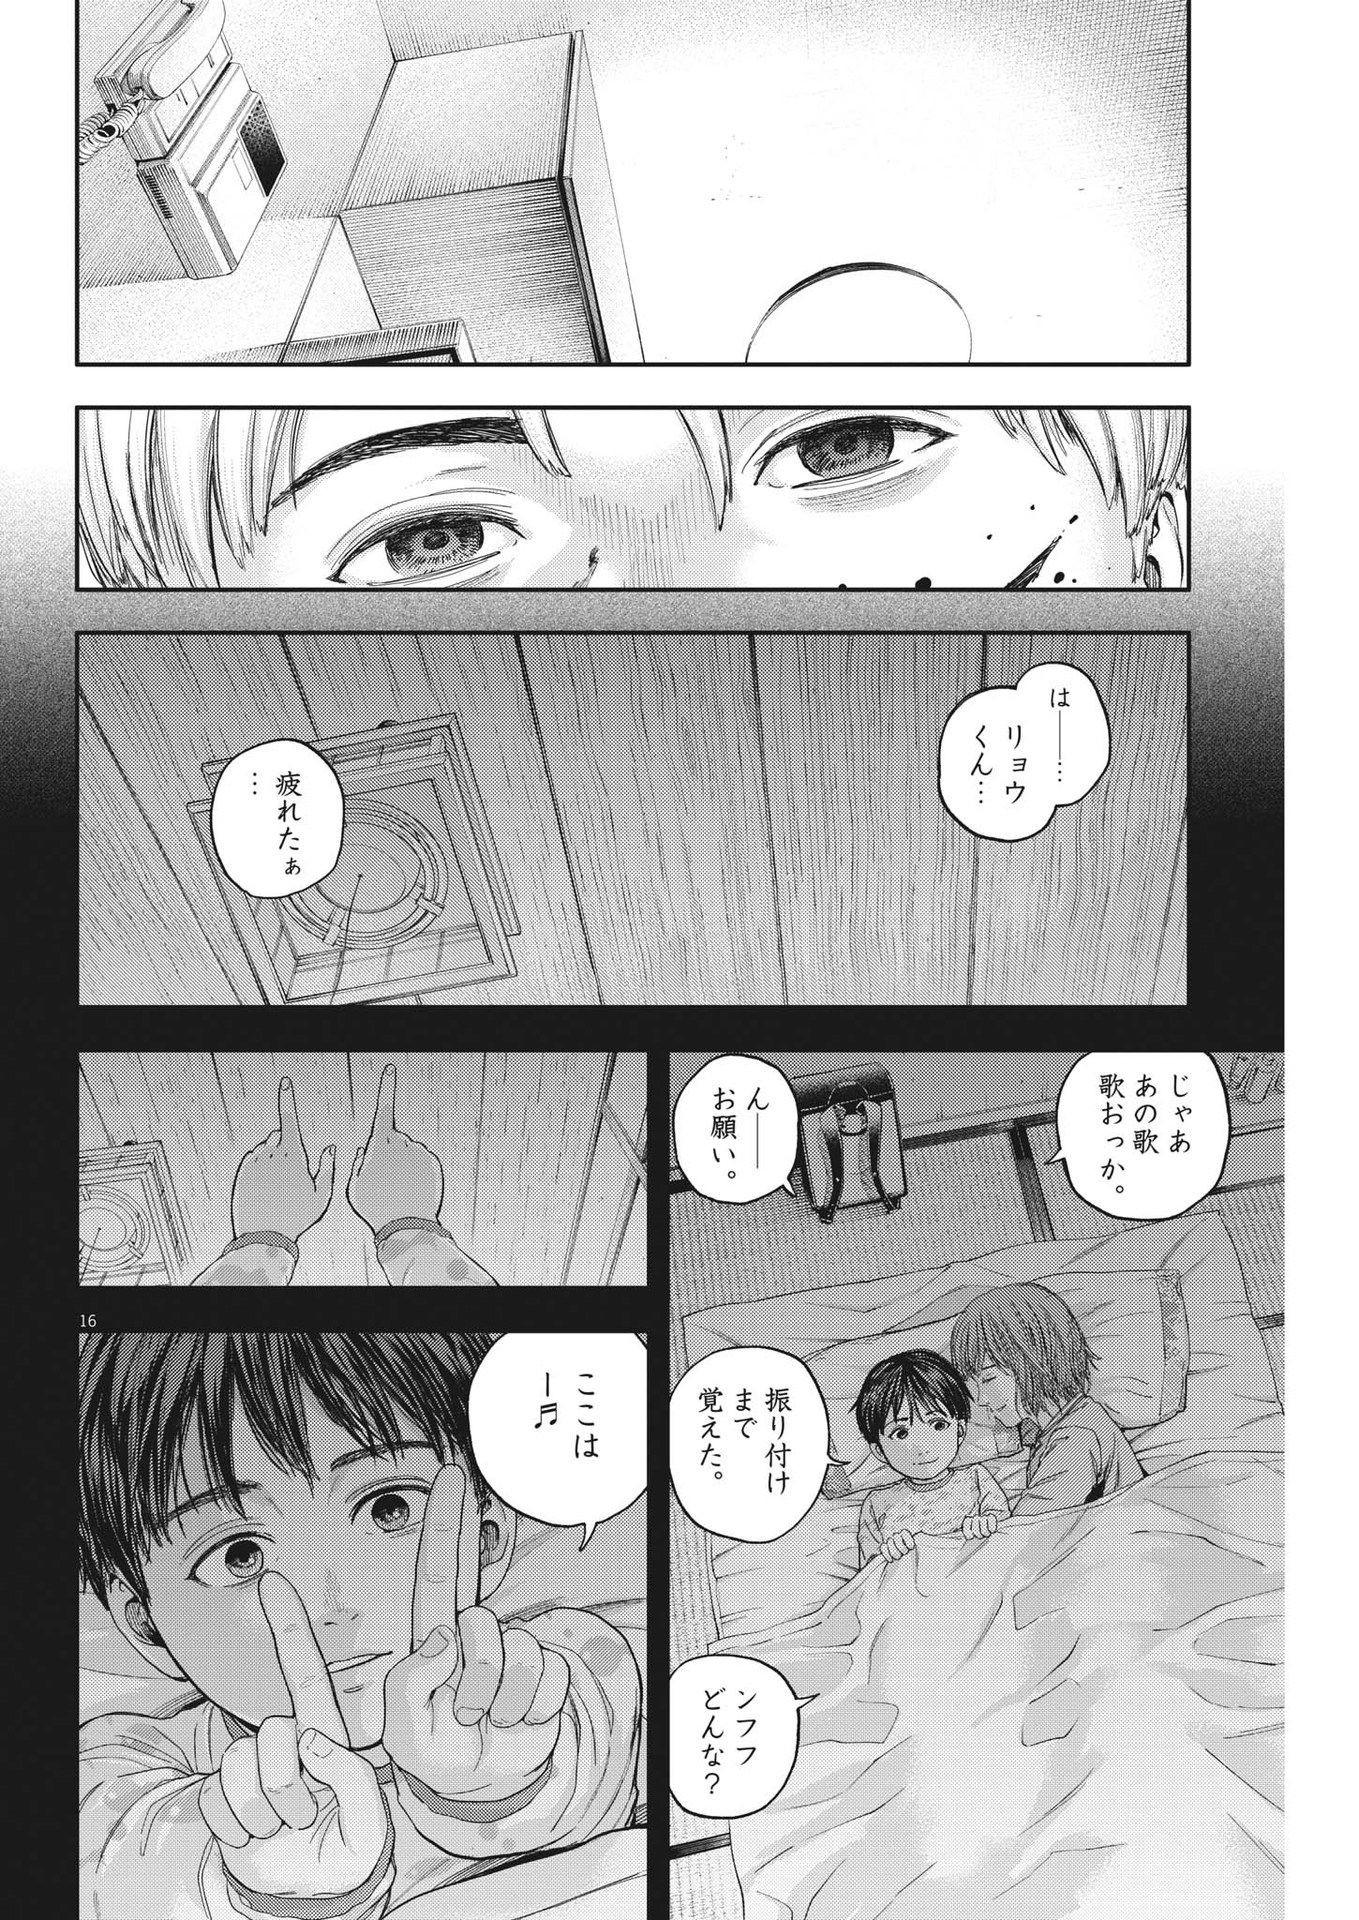 Yumenashi-sensei no Shinroshidou - Chapter 16 - Page 16